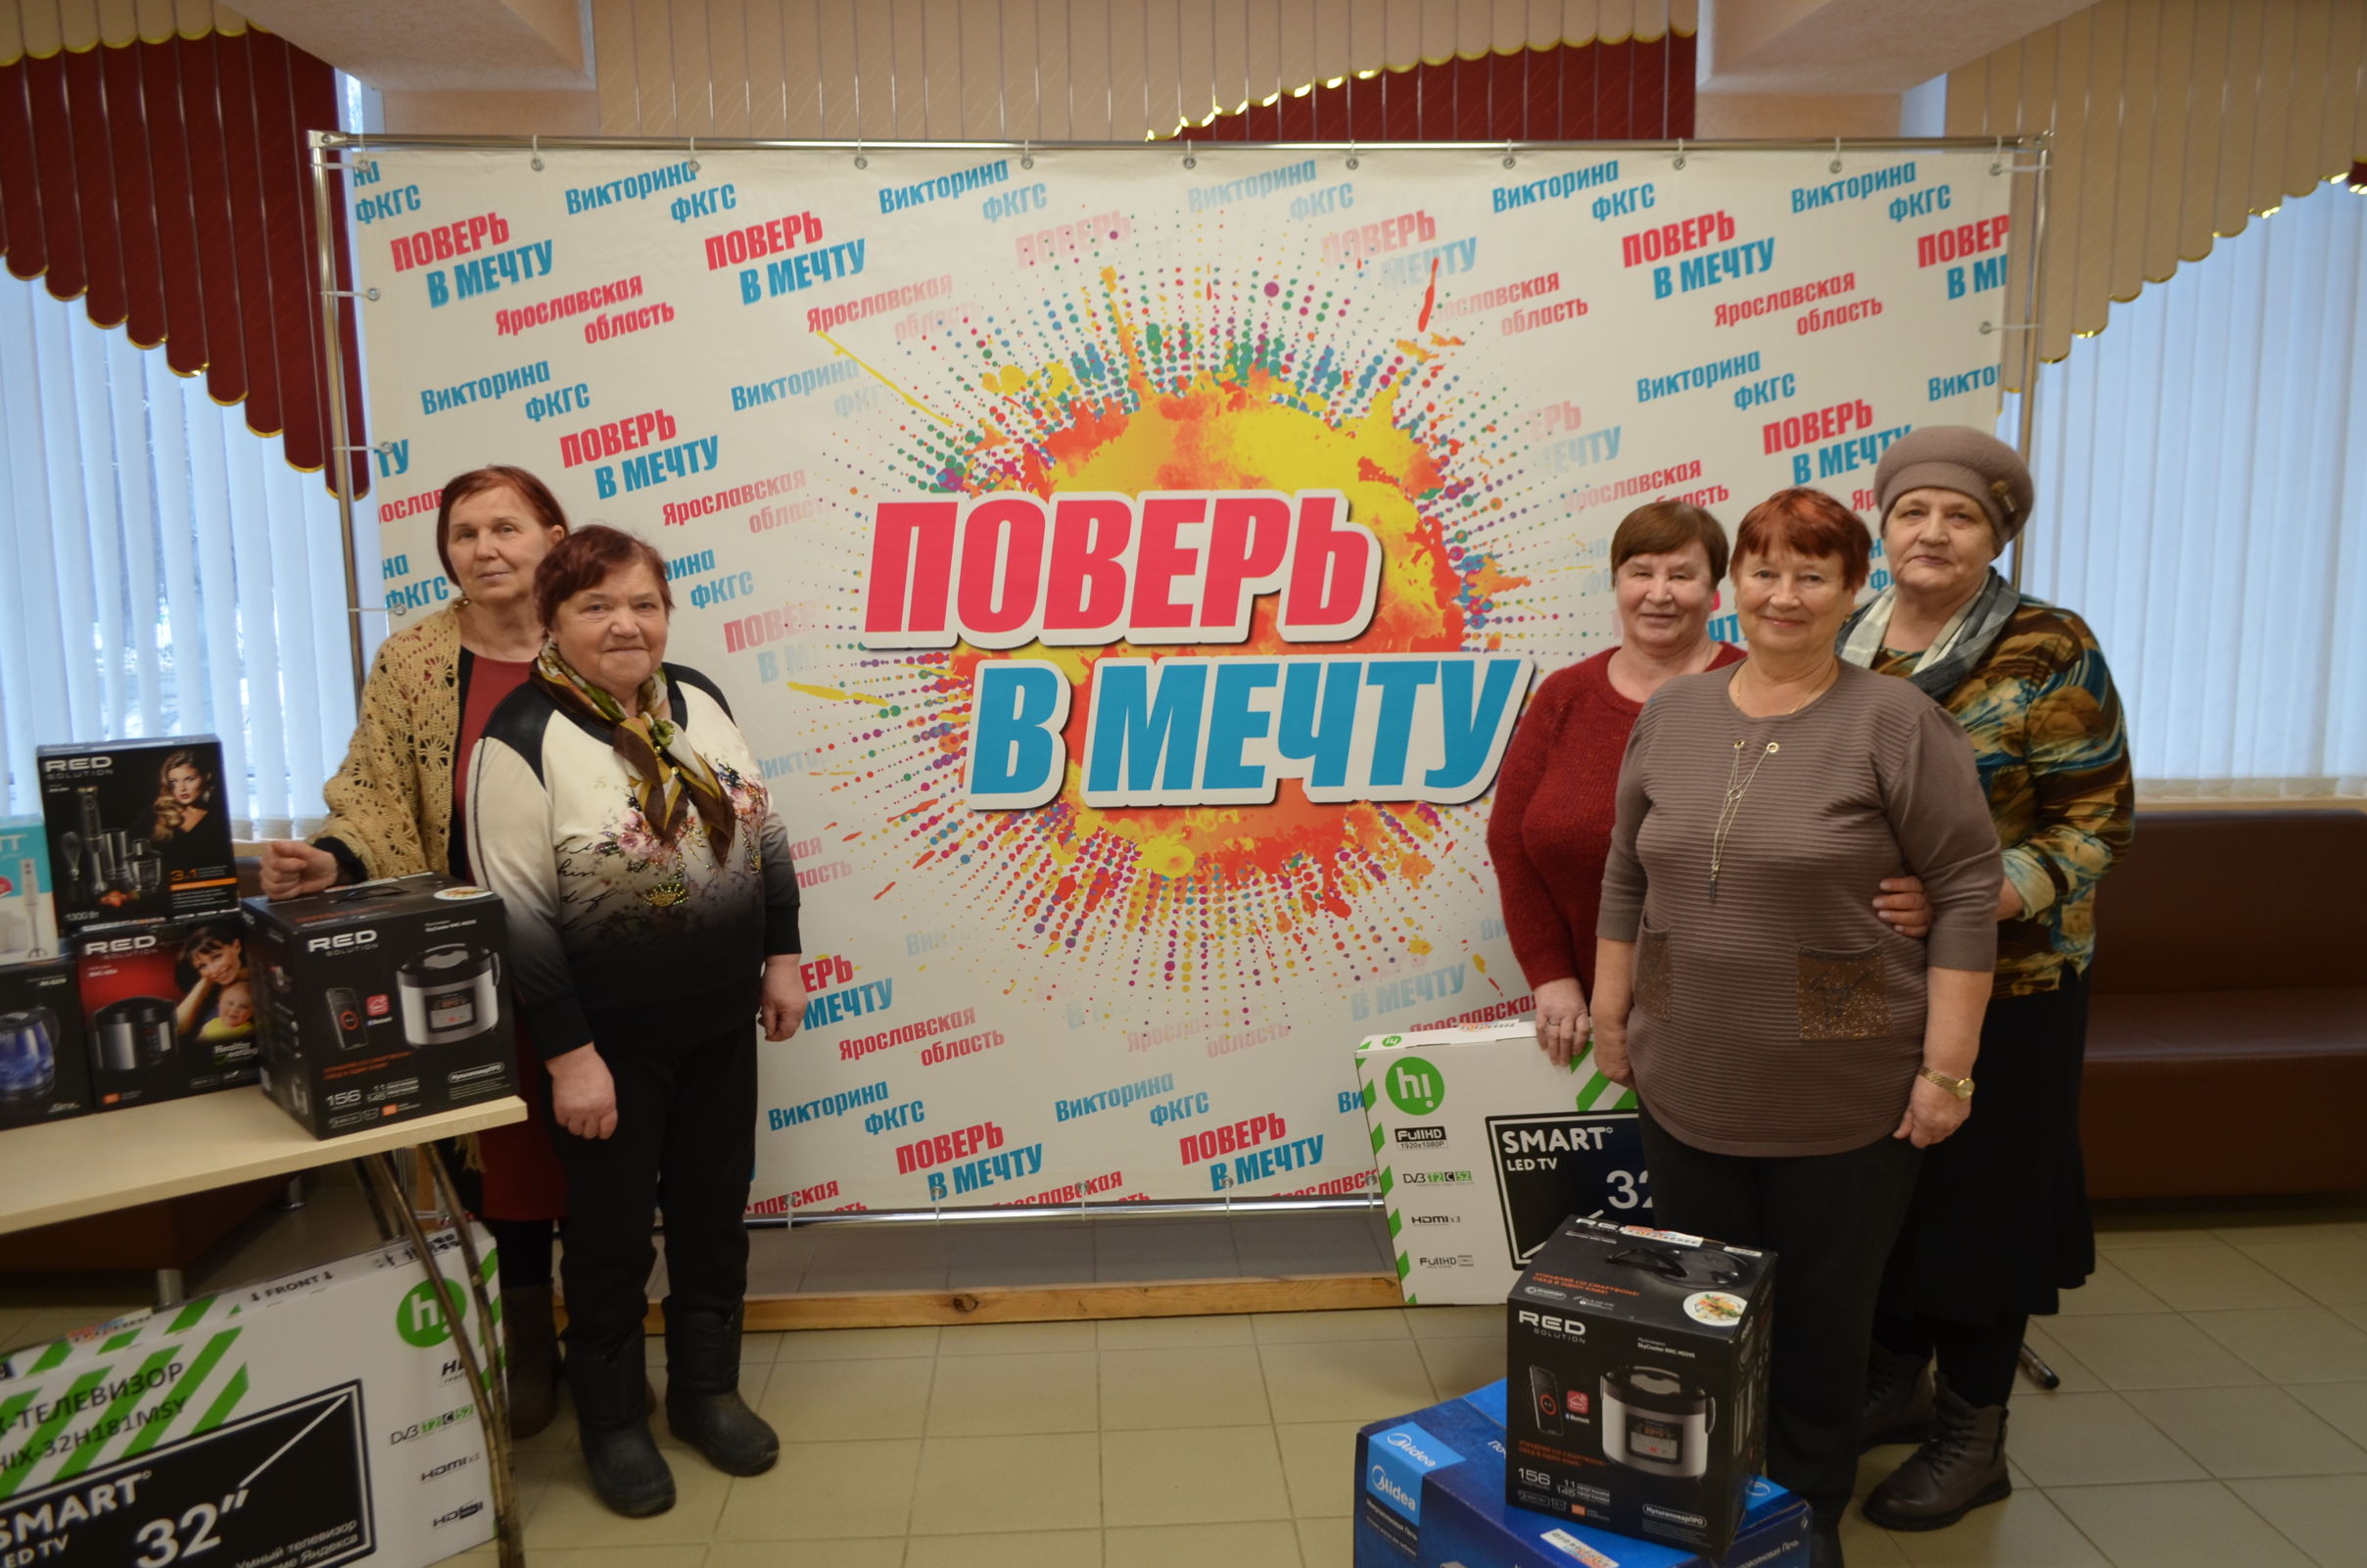 Подарки викторины ФКГС «Поверь в мечту!» в Борисоглебском районе уже получили шесть человек